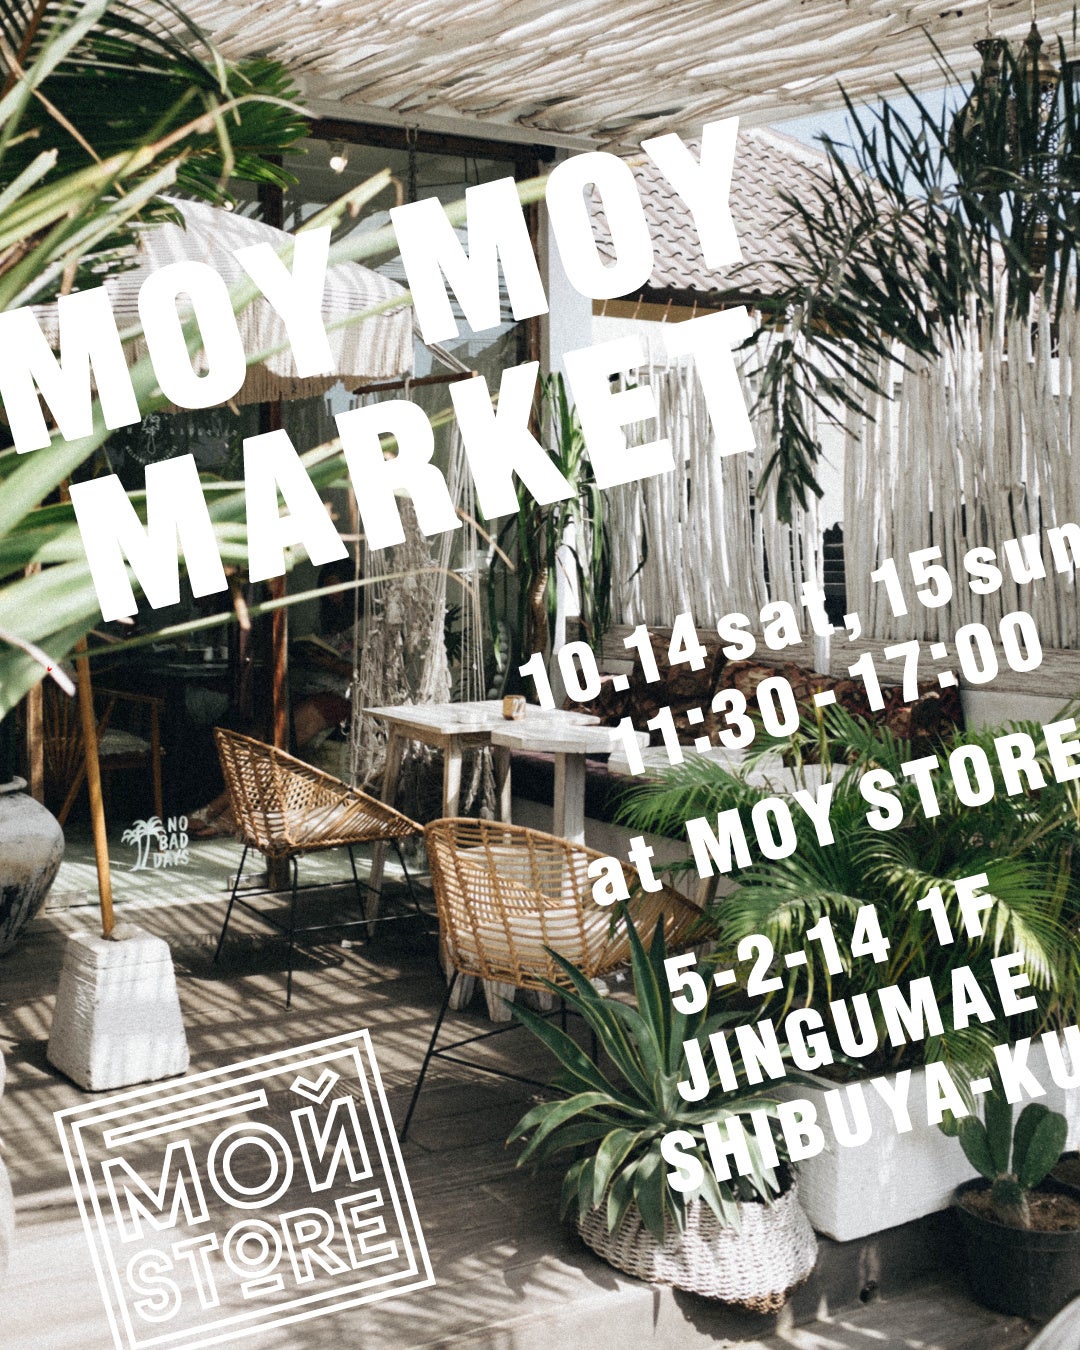 MOY STORE（モーイ ストア）主催の蚤の市「MOY MOY MARKET」（モーイ モーイ マーケット）、今回は大好評のブックマーケットも開催します！